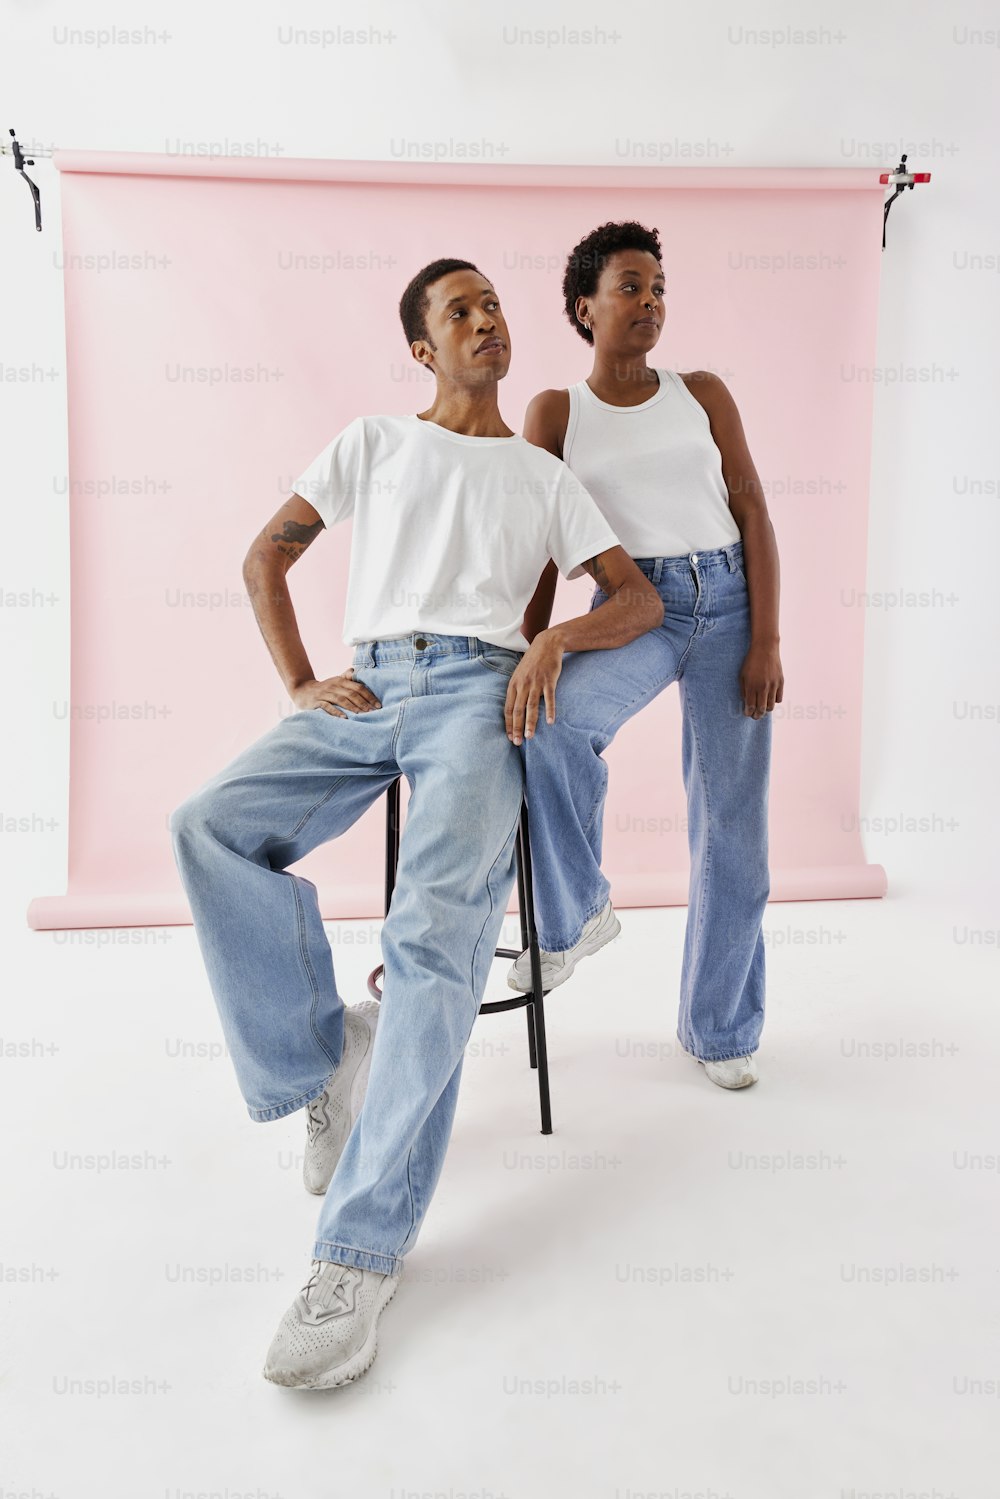 Un homme et une femme assis sur une chaise devant un fond rose